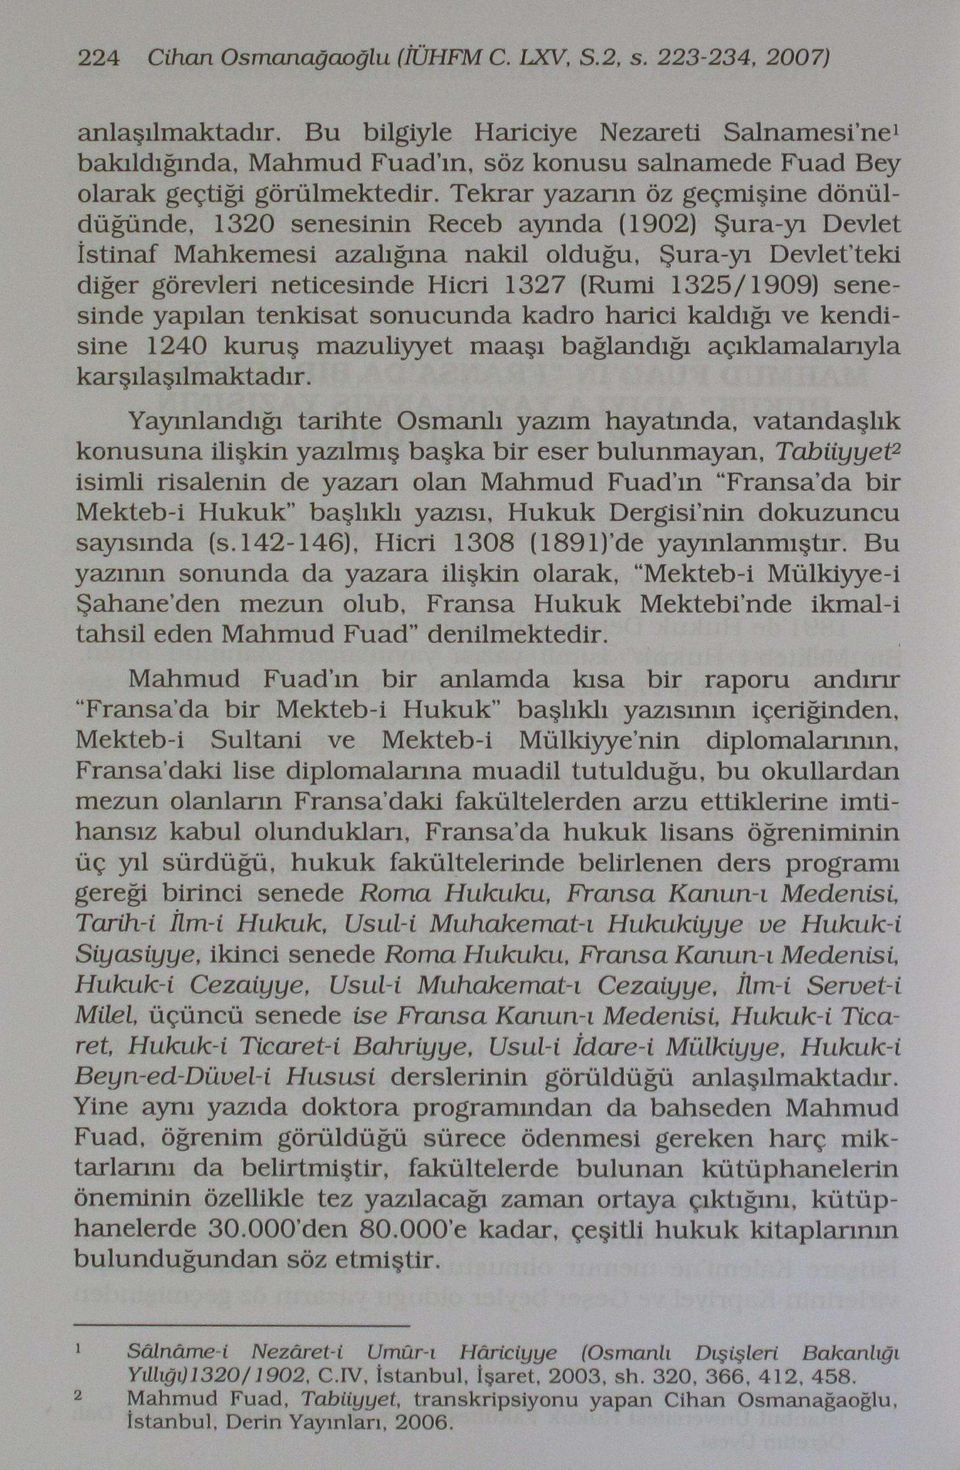 Tekrar yazarın öz geçmişine dönüldüğünde, 1320 senesinin Receb ayında (1902) Şura-yı Devlet İstinaf Mahkemesi azalığma nakil olduğu, Şura-yı Devletteki diğer görevleri neticesinde Hicri 1327 (Rumi